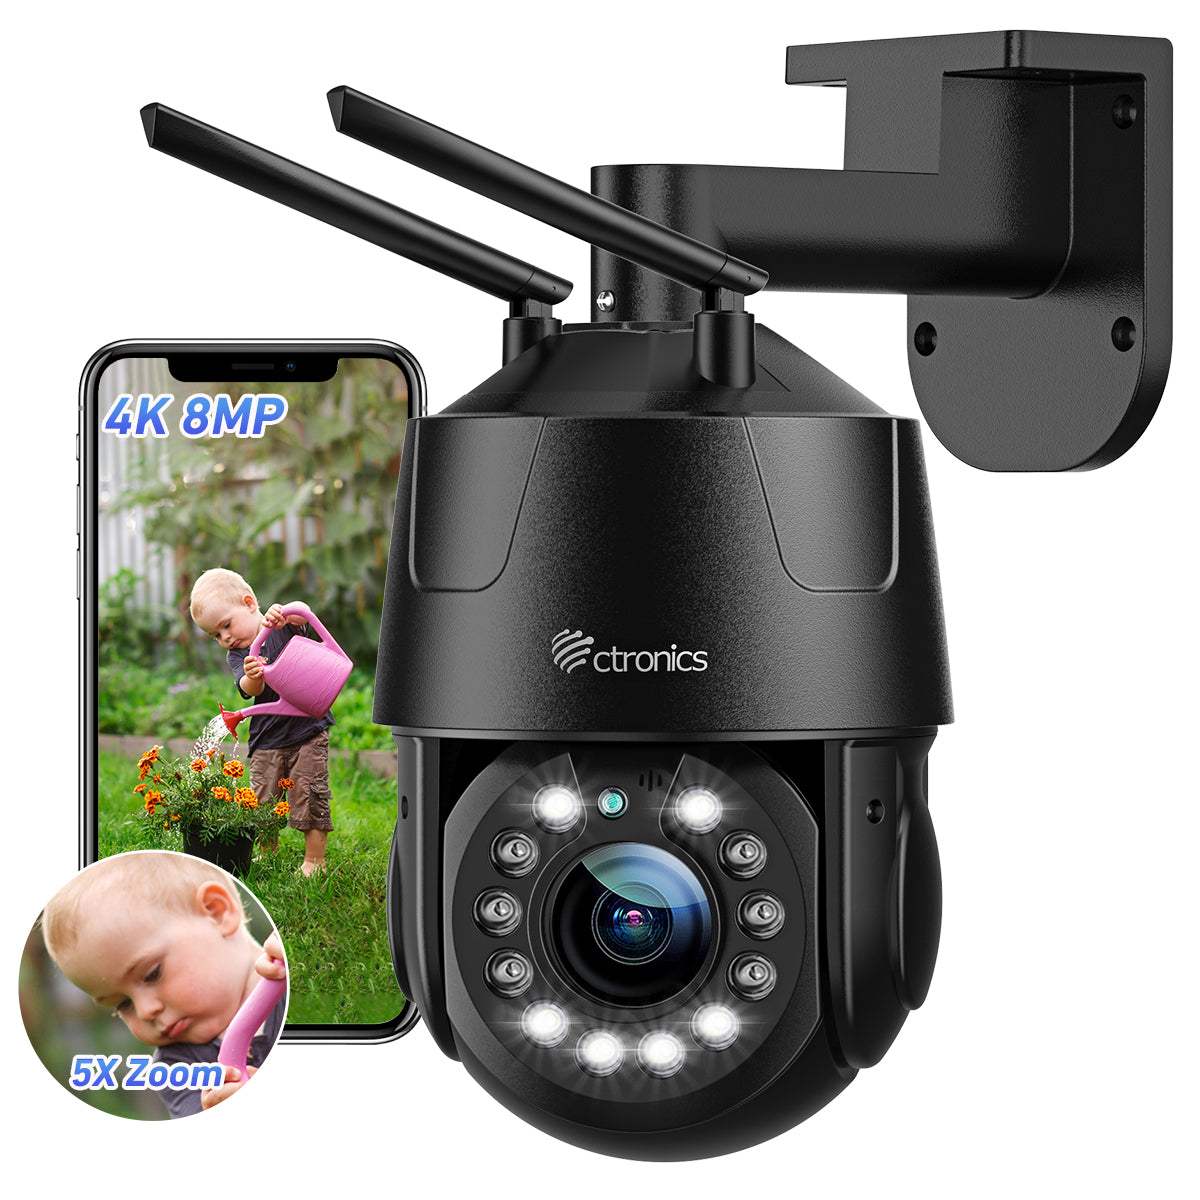 Caméra de surveillance Ctronics 4K 8MP avec WiFi 2,4/5 GHz et détection de personnes/véhicules/animaux